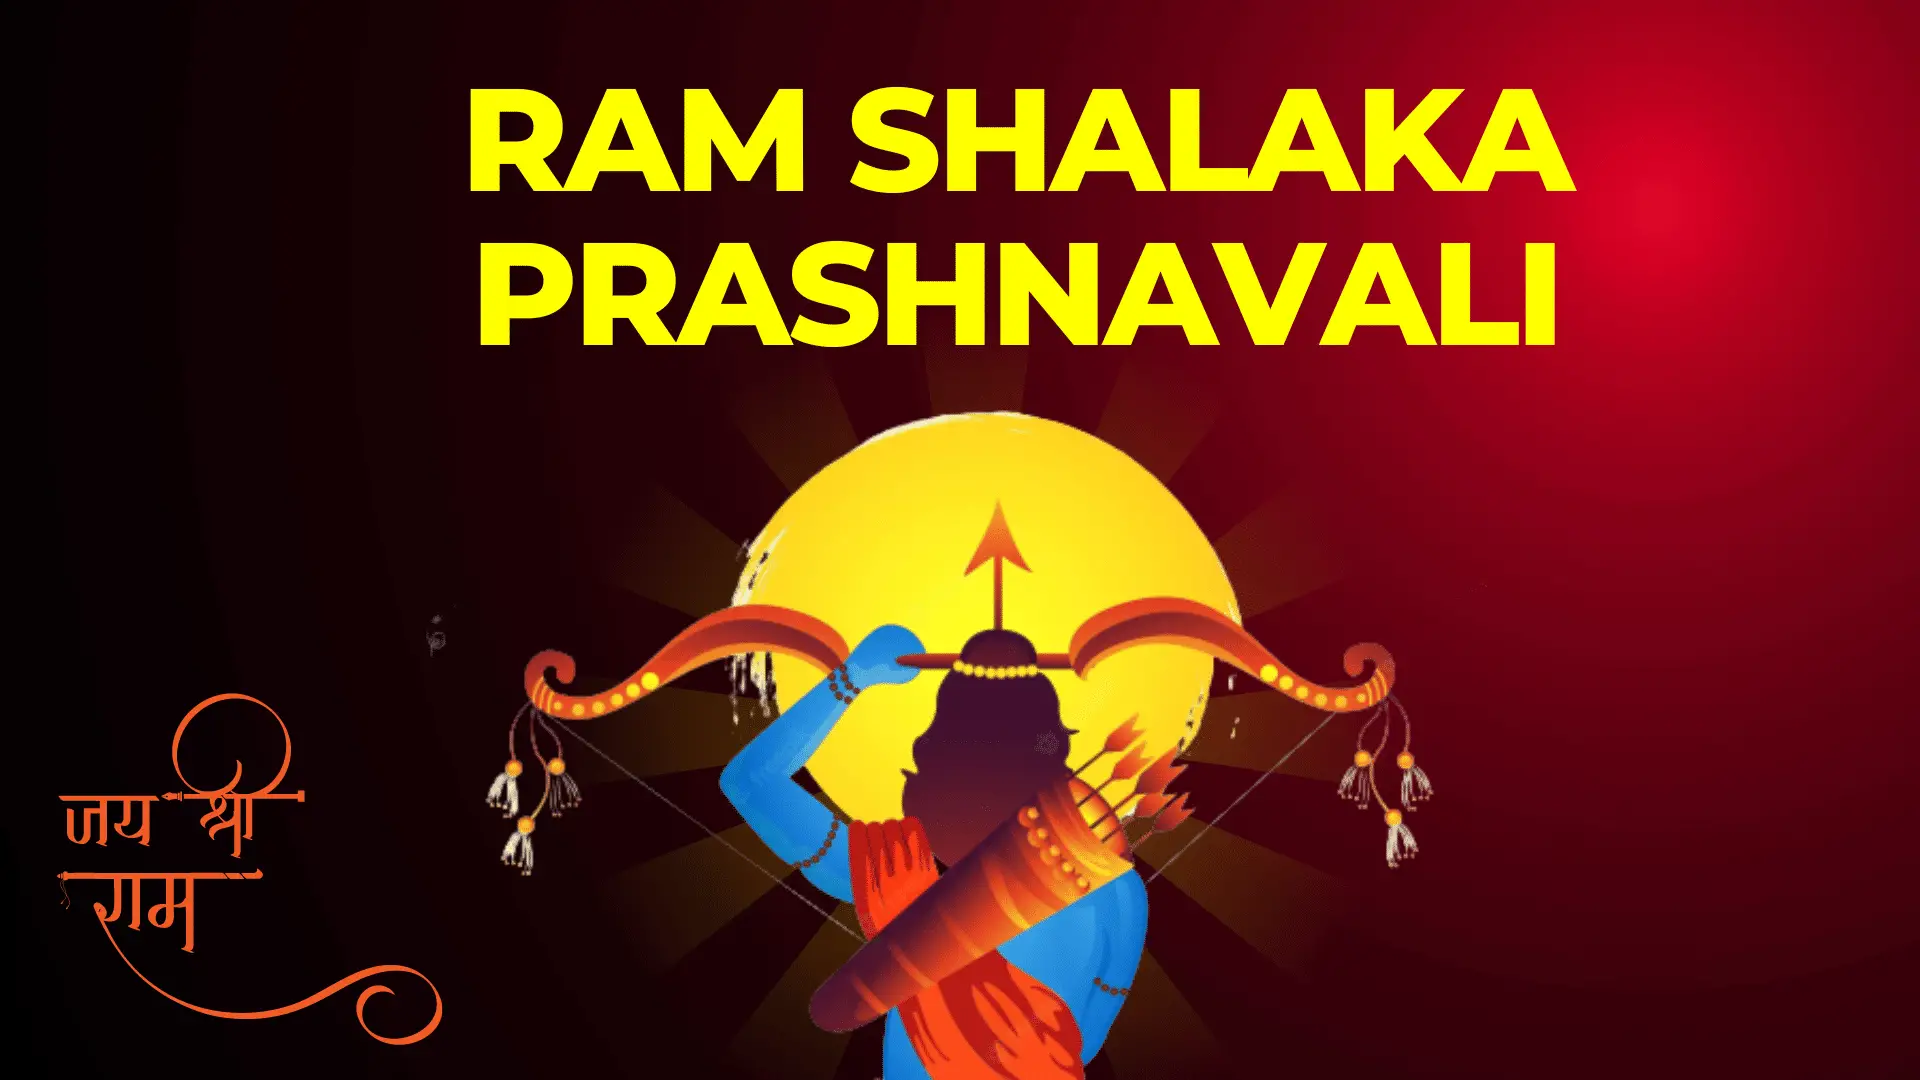 Shri Ram Shalaka Prashnavali